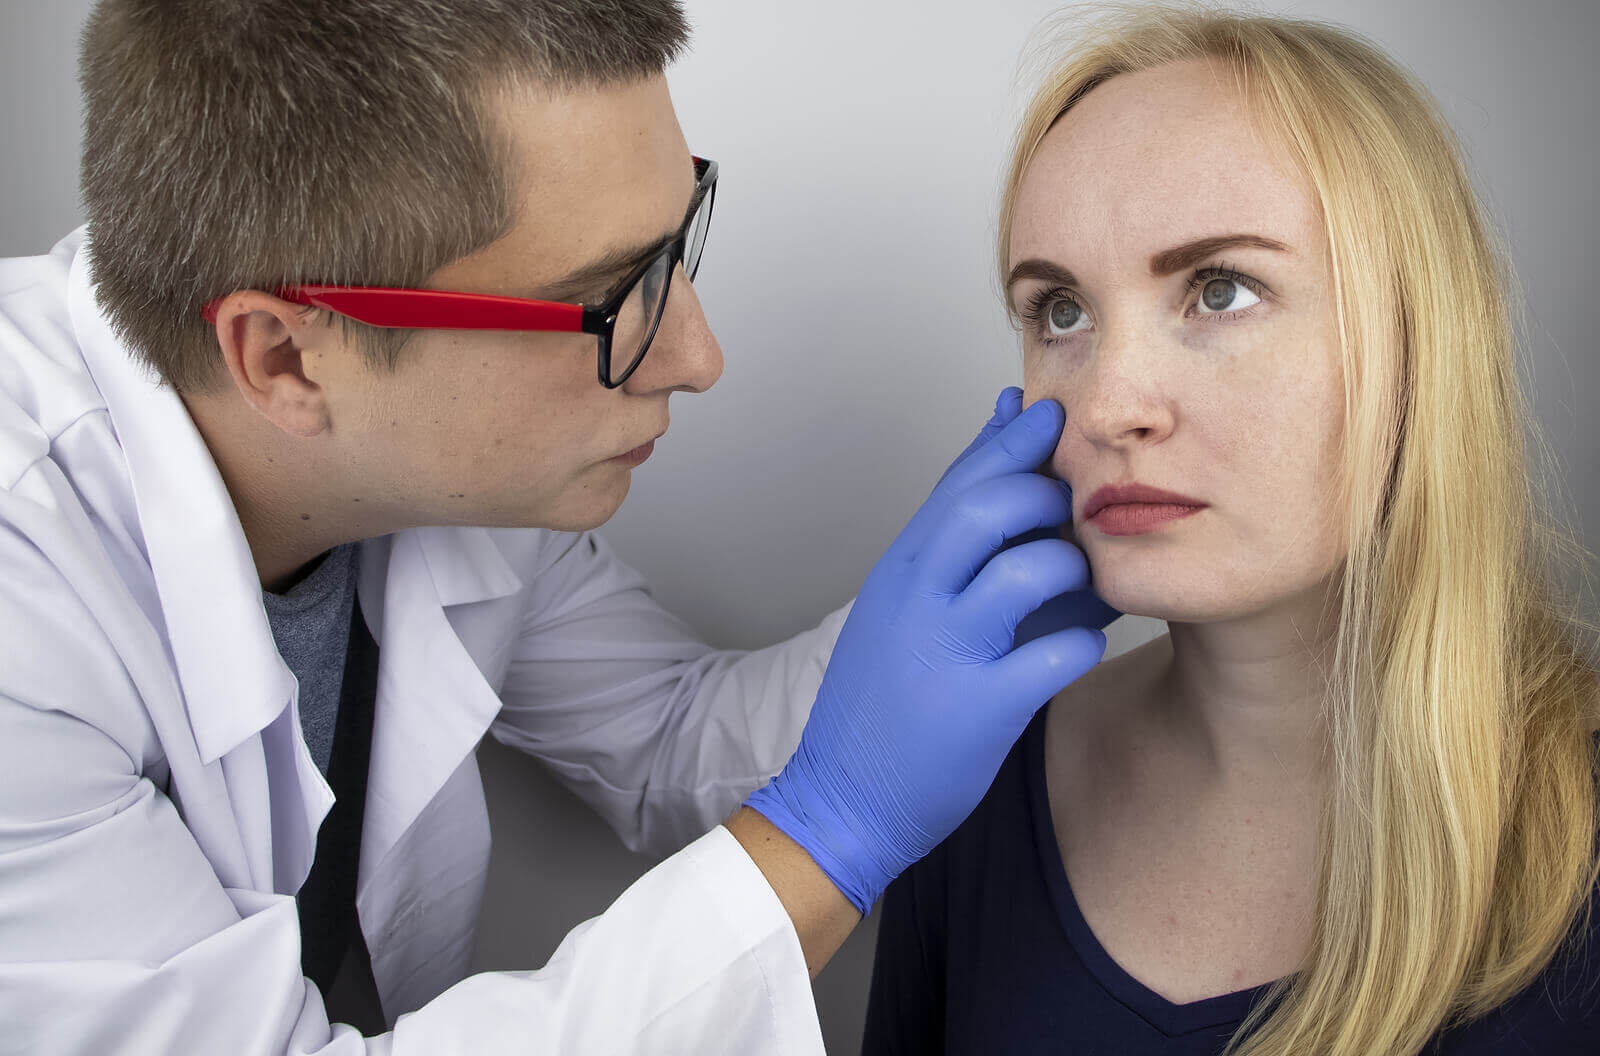 A doctor examining a woman's eye.